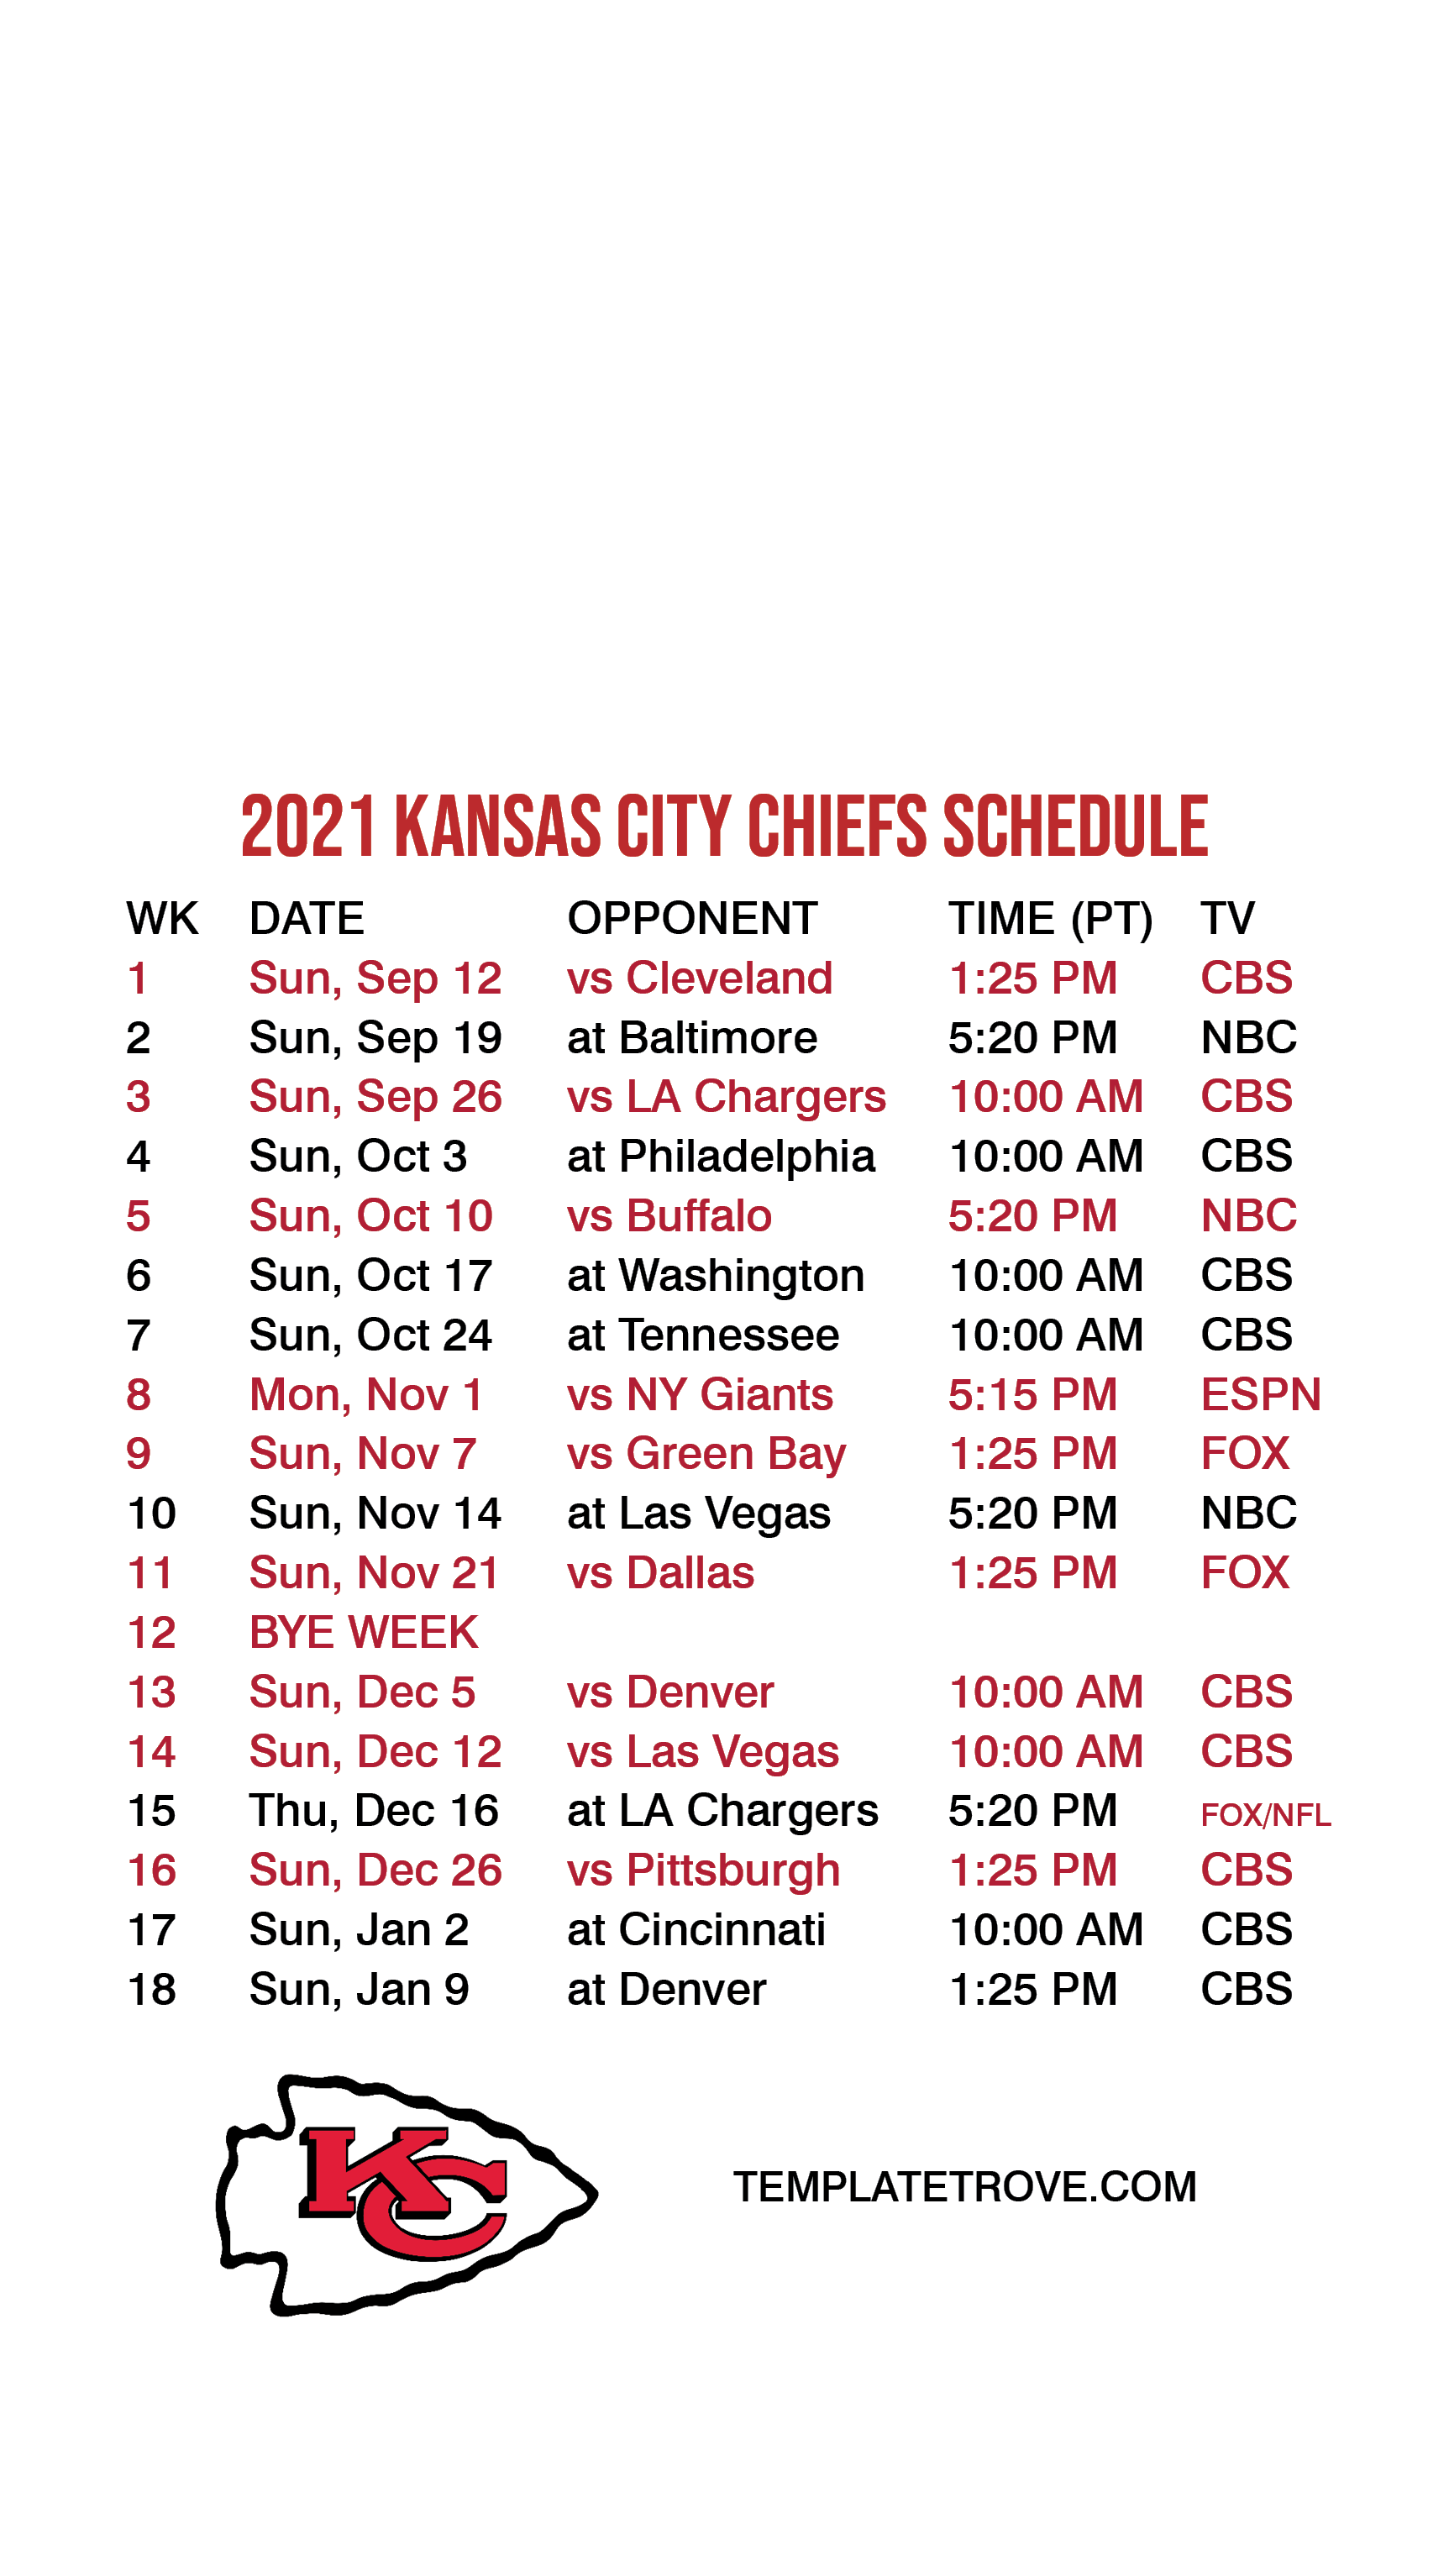 kc chiefs schedule